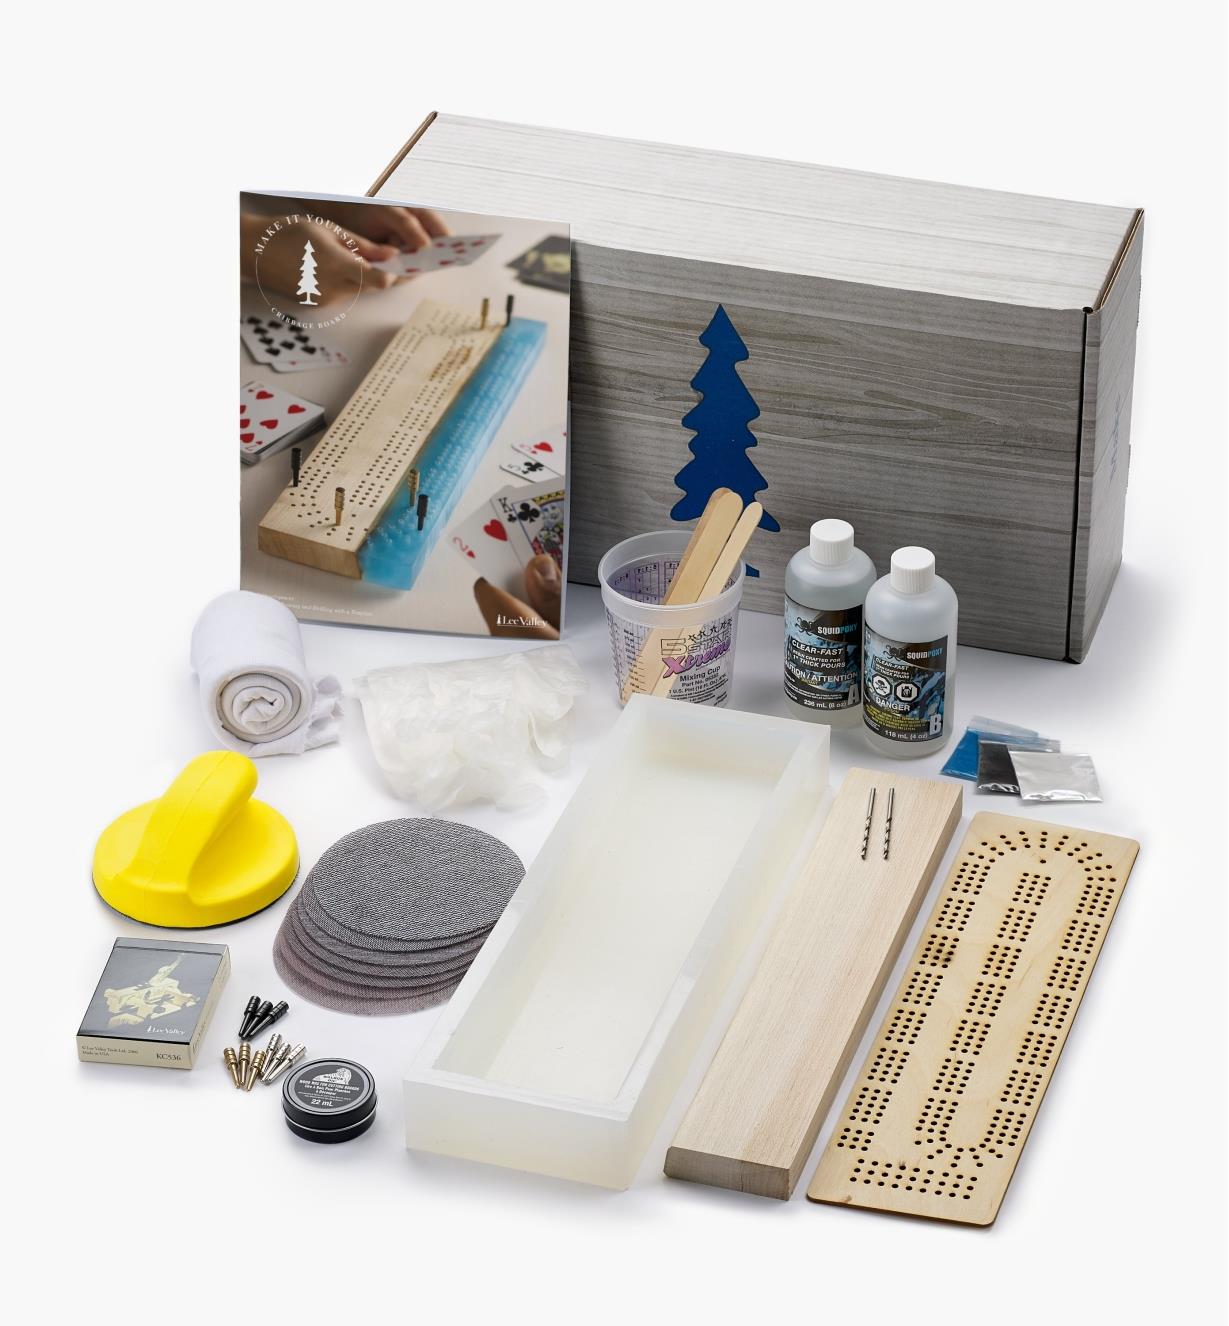 MK102 - Lee Valley Cribbage Board Kit